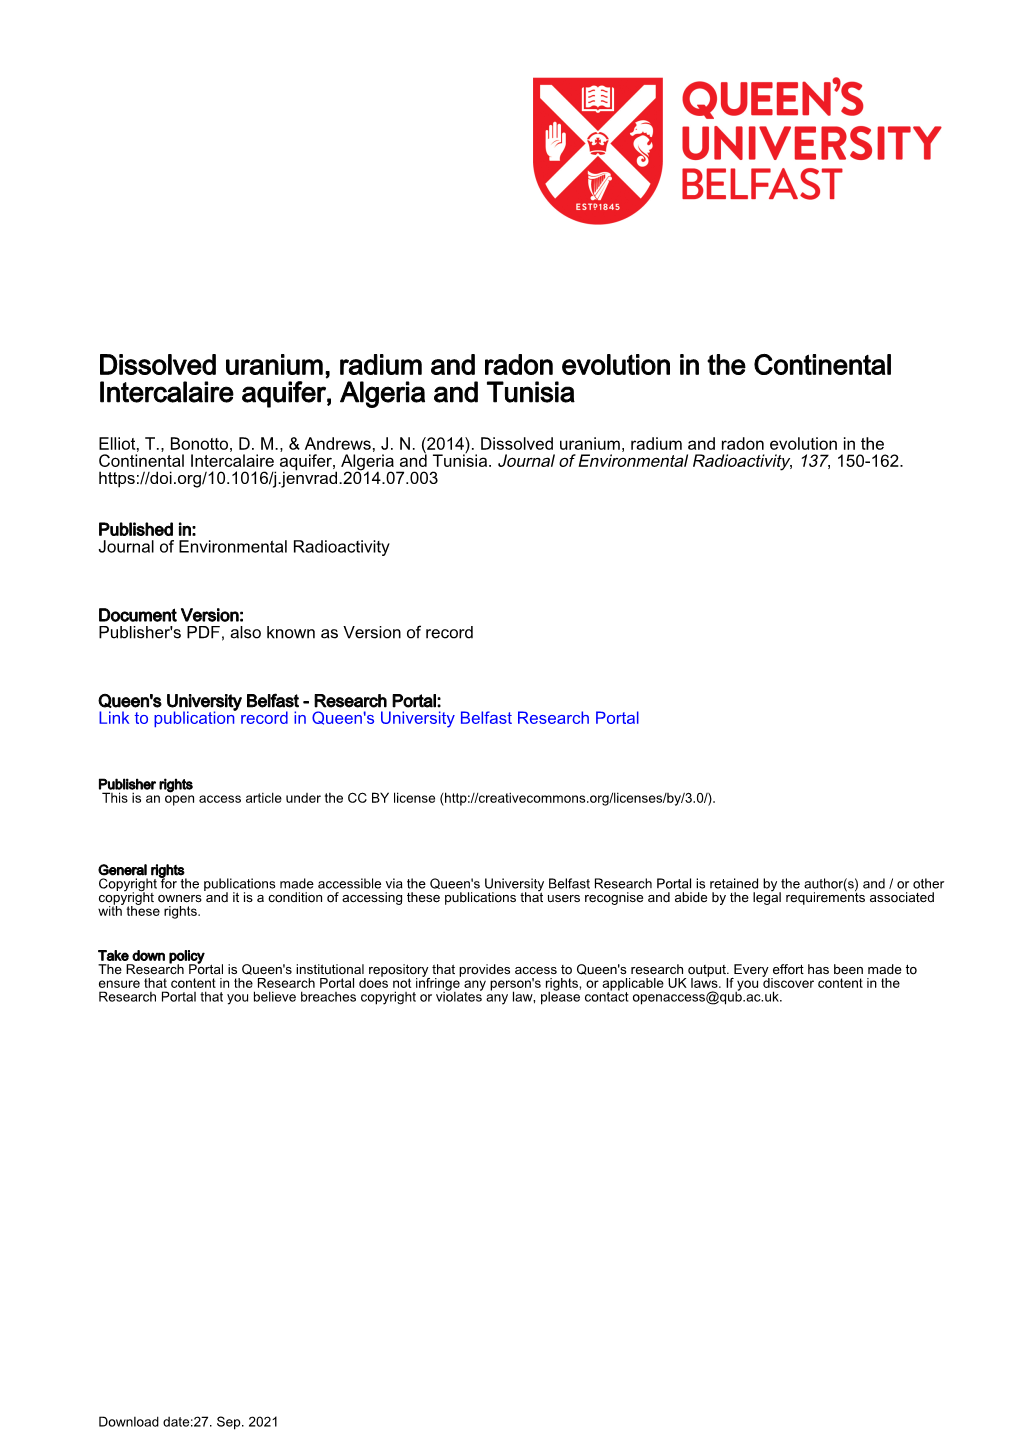 Dissolved Uranium, Radium and Radon Evolution in the Continental Intercalaire Aquifer, Algeria and Tunisia